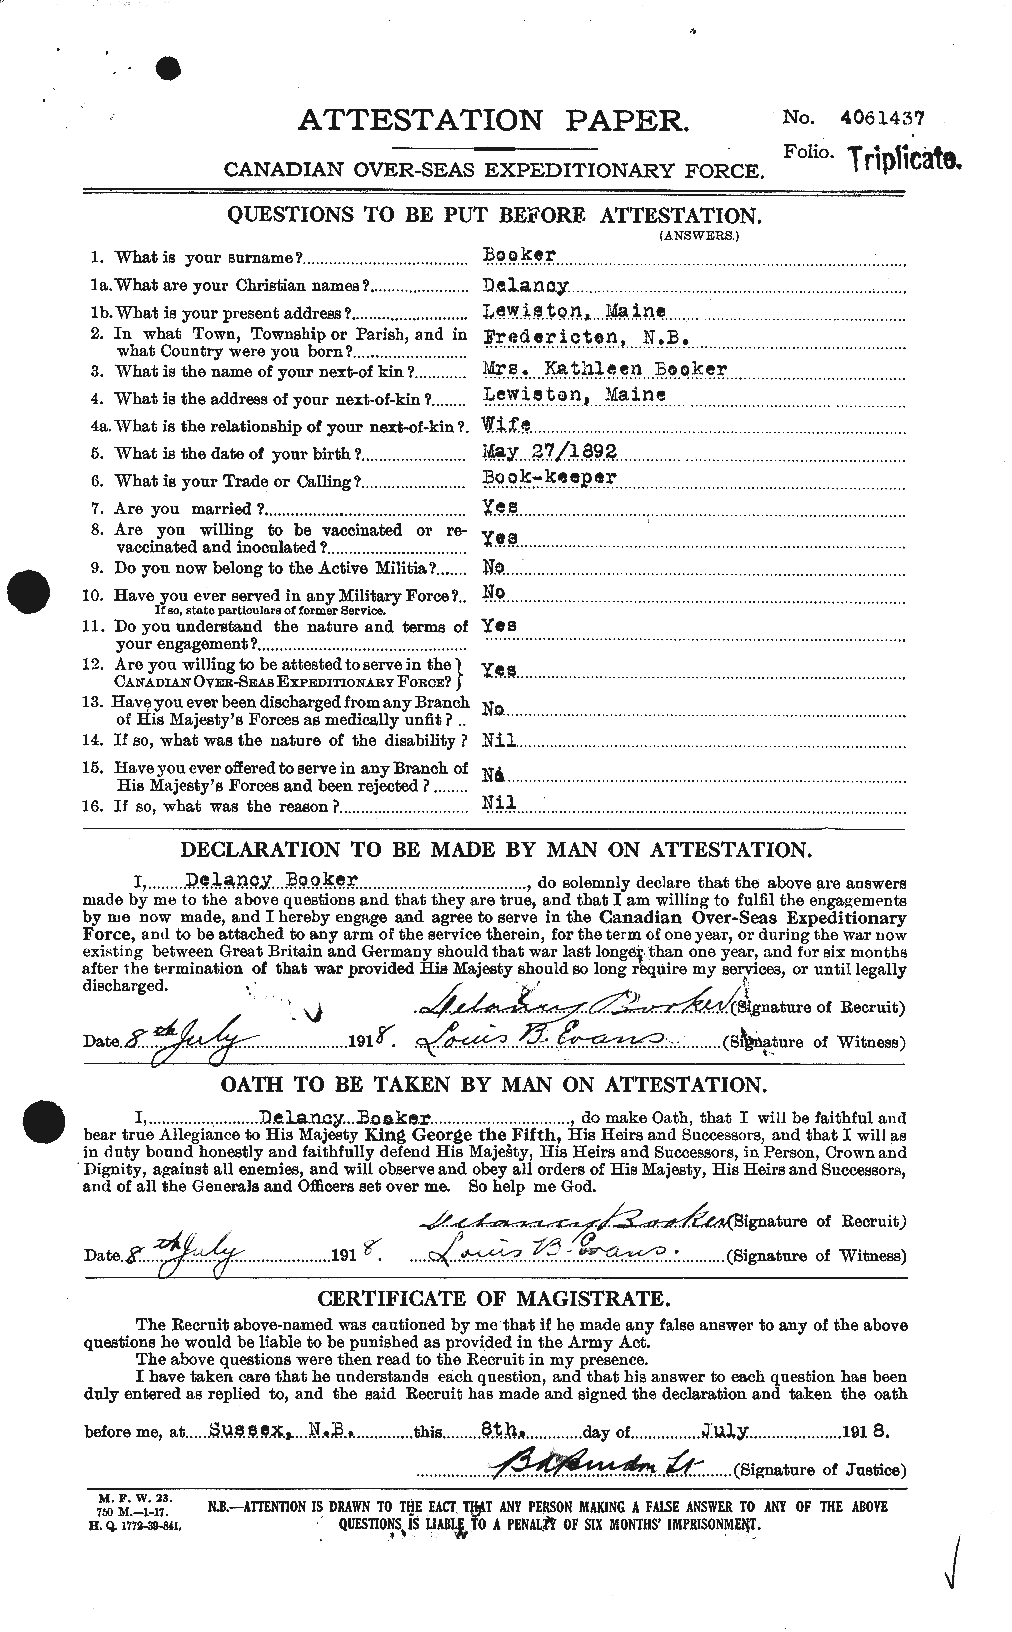 Dossiers du Personnel de la Première Guerre mondiale - CEC 251240a